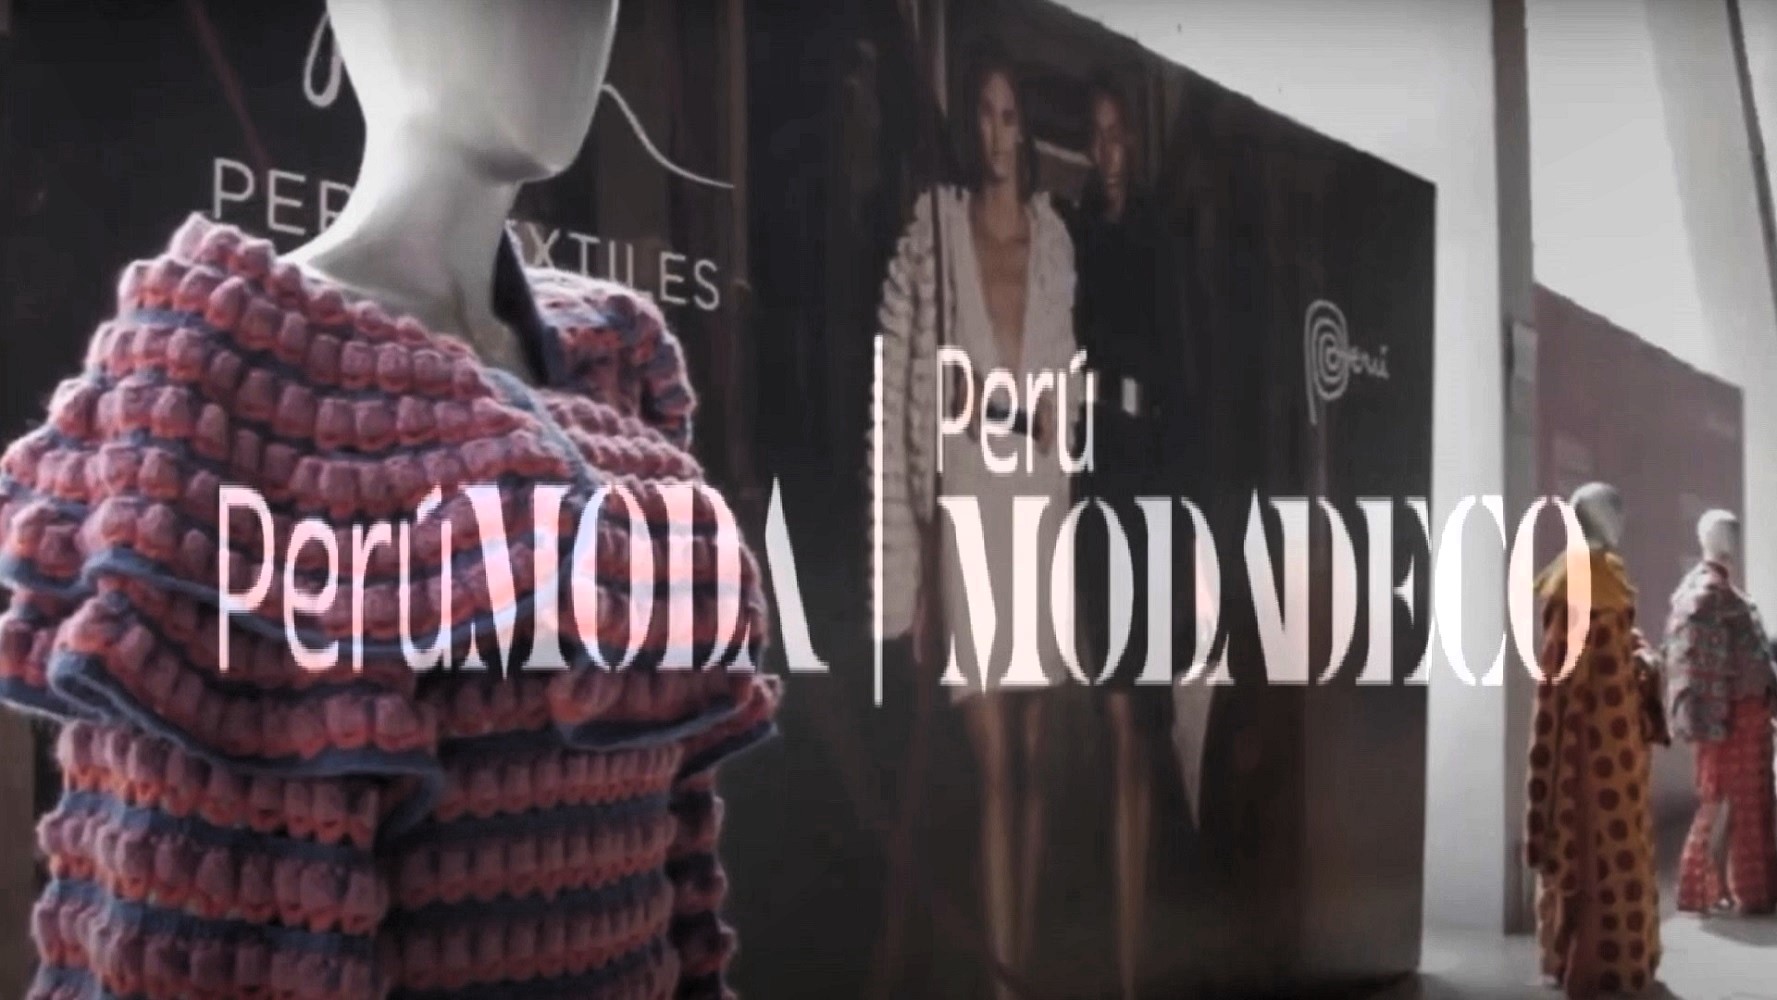 Perú Moda & Perú Moda Deco 2023, del 19 al 20 octubre 2023 ¡Sólo quedan 7 días!